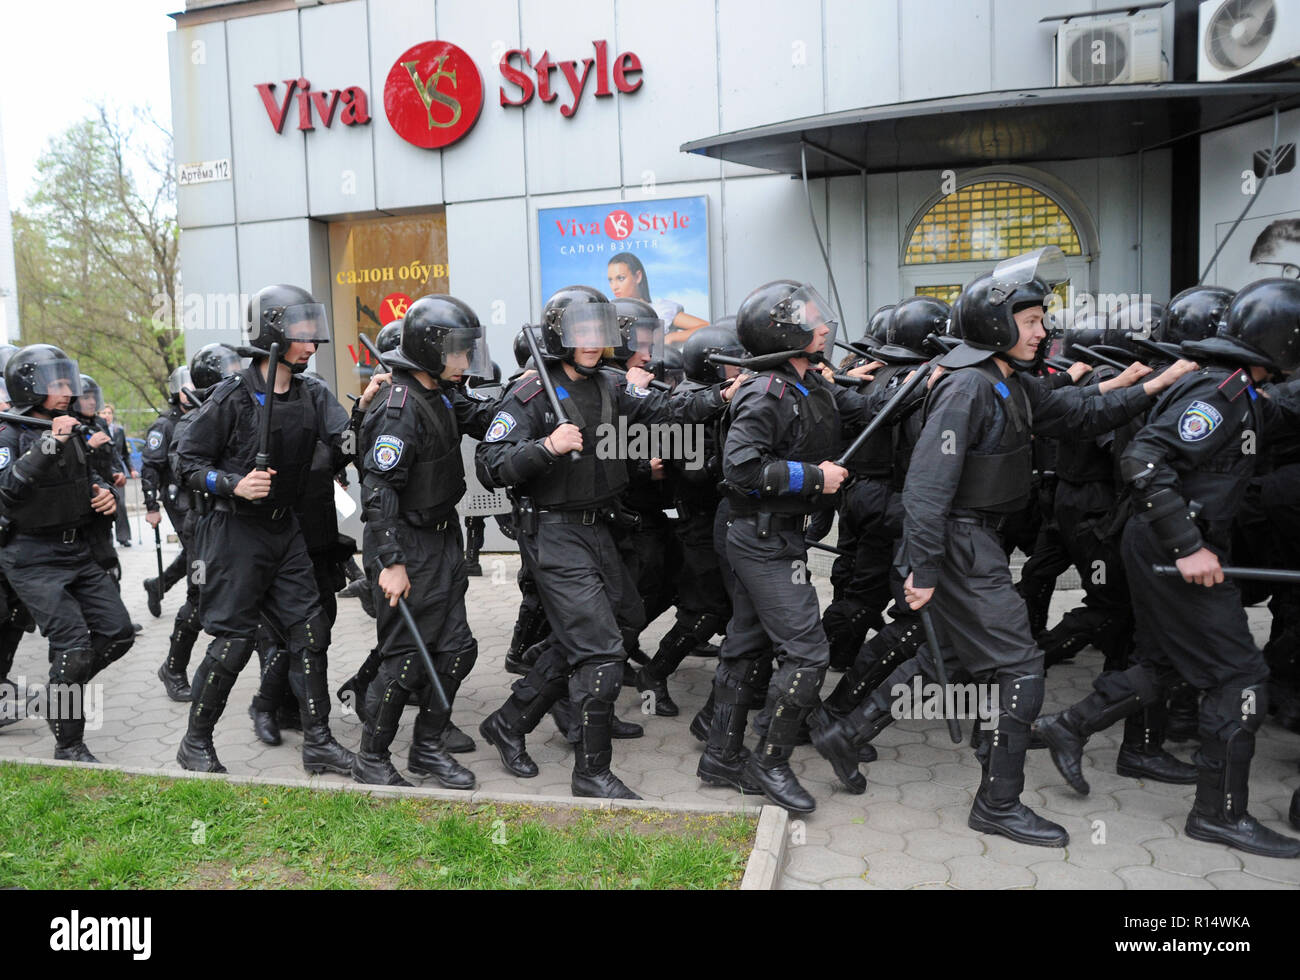 Aprile 28, 2014 - Donetsk, Ucraina: Ucraino polizia si muovano per proteggere una dimostrazione pacifica degli ucraini in favore dell unità del loro paese. Nonostante la protezione della polizia, un gruppo di pro-Russia separatisti attaccato violentemente e disperso i manifestanti pacifici.La pro-russo gruppo separatista, per la maggior parte giovani di Balaclava, allora celebrato le loro azioni da urlando avevano fracassato "fascisti". Une manifestazione pacifique en faveur de l'unite de l'Ucraina a Donetsk est brutalement dispersee par des groupes separatistes pro-russes armes de manganelli et, pour certuni, d'armes blanc Foto Stock